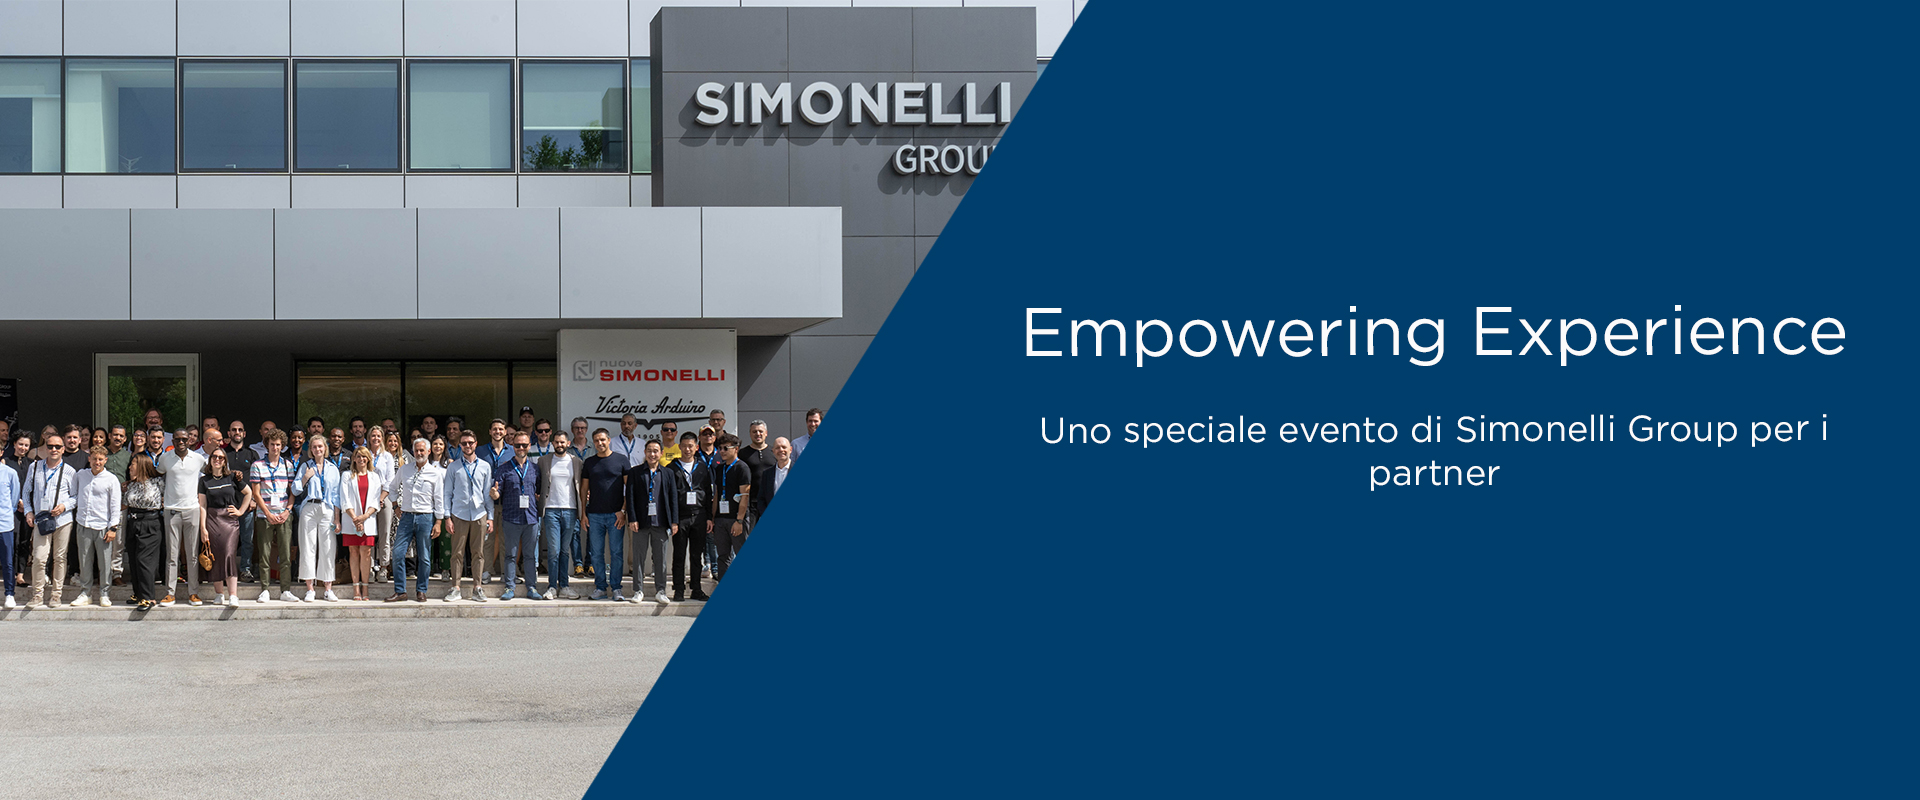 “Empowering Experience”, uno speciale evento di Simonelli Group per i partner.